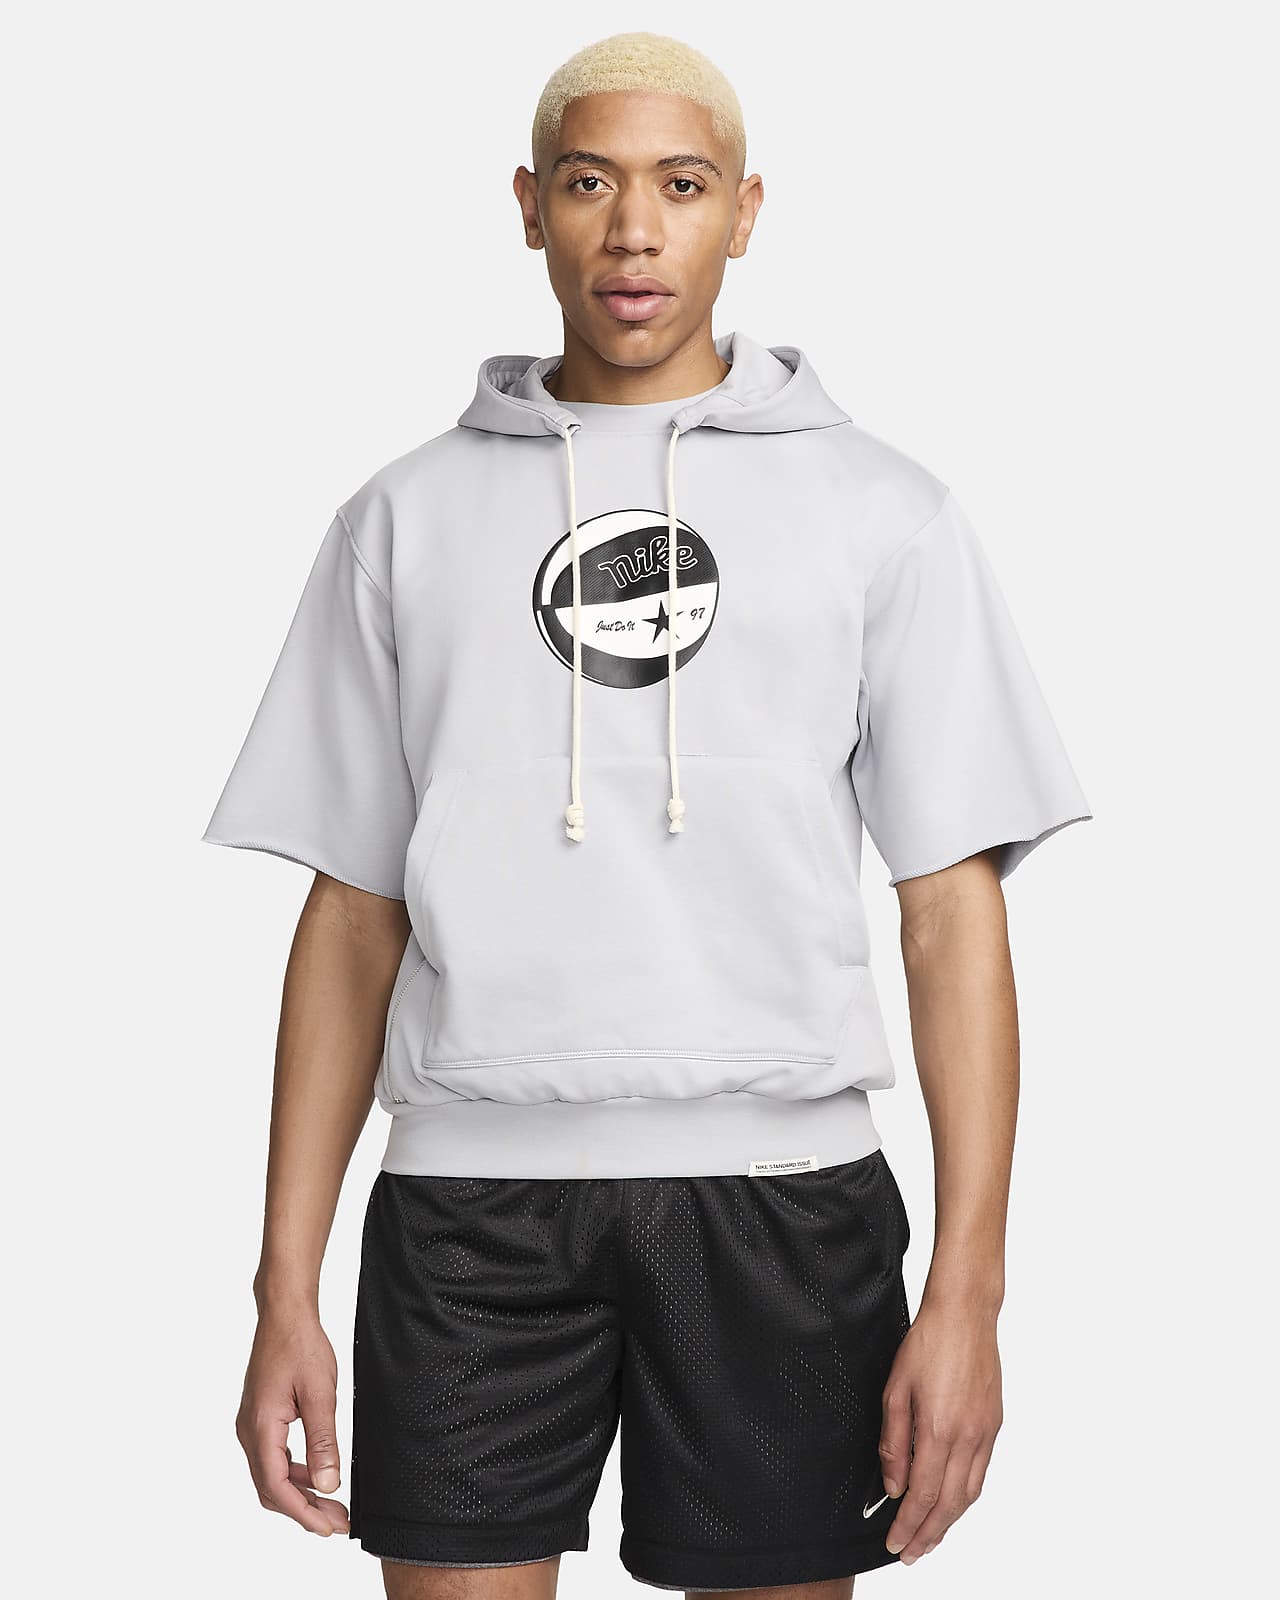 Ανδρική κοντομάνικη μπλούζα Dri-FIT με κουκούλα Nike Standard Issue